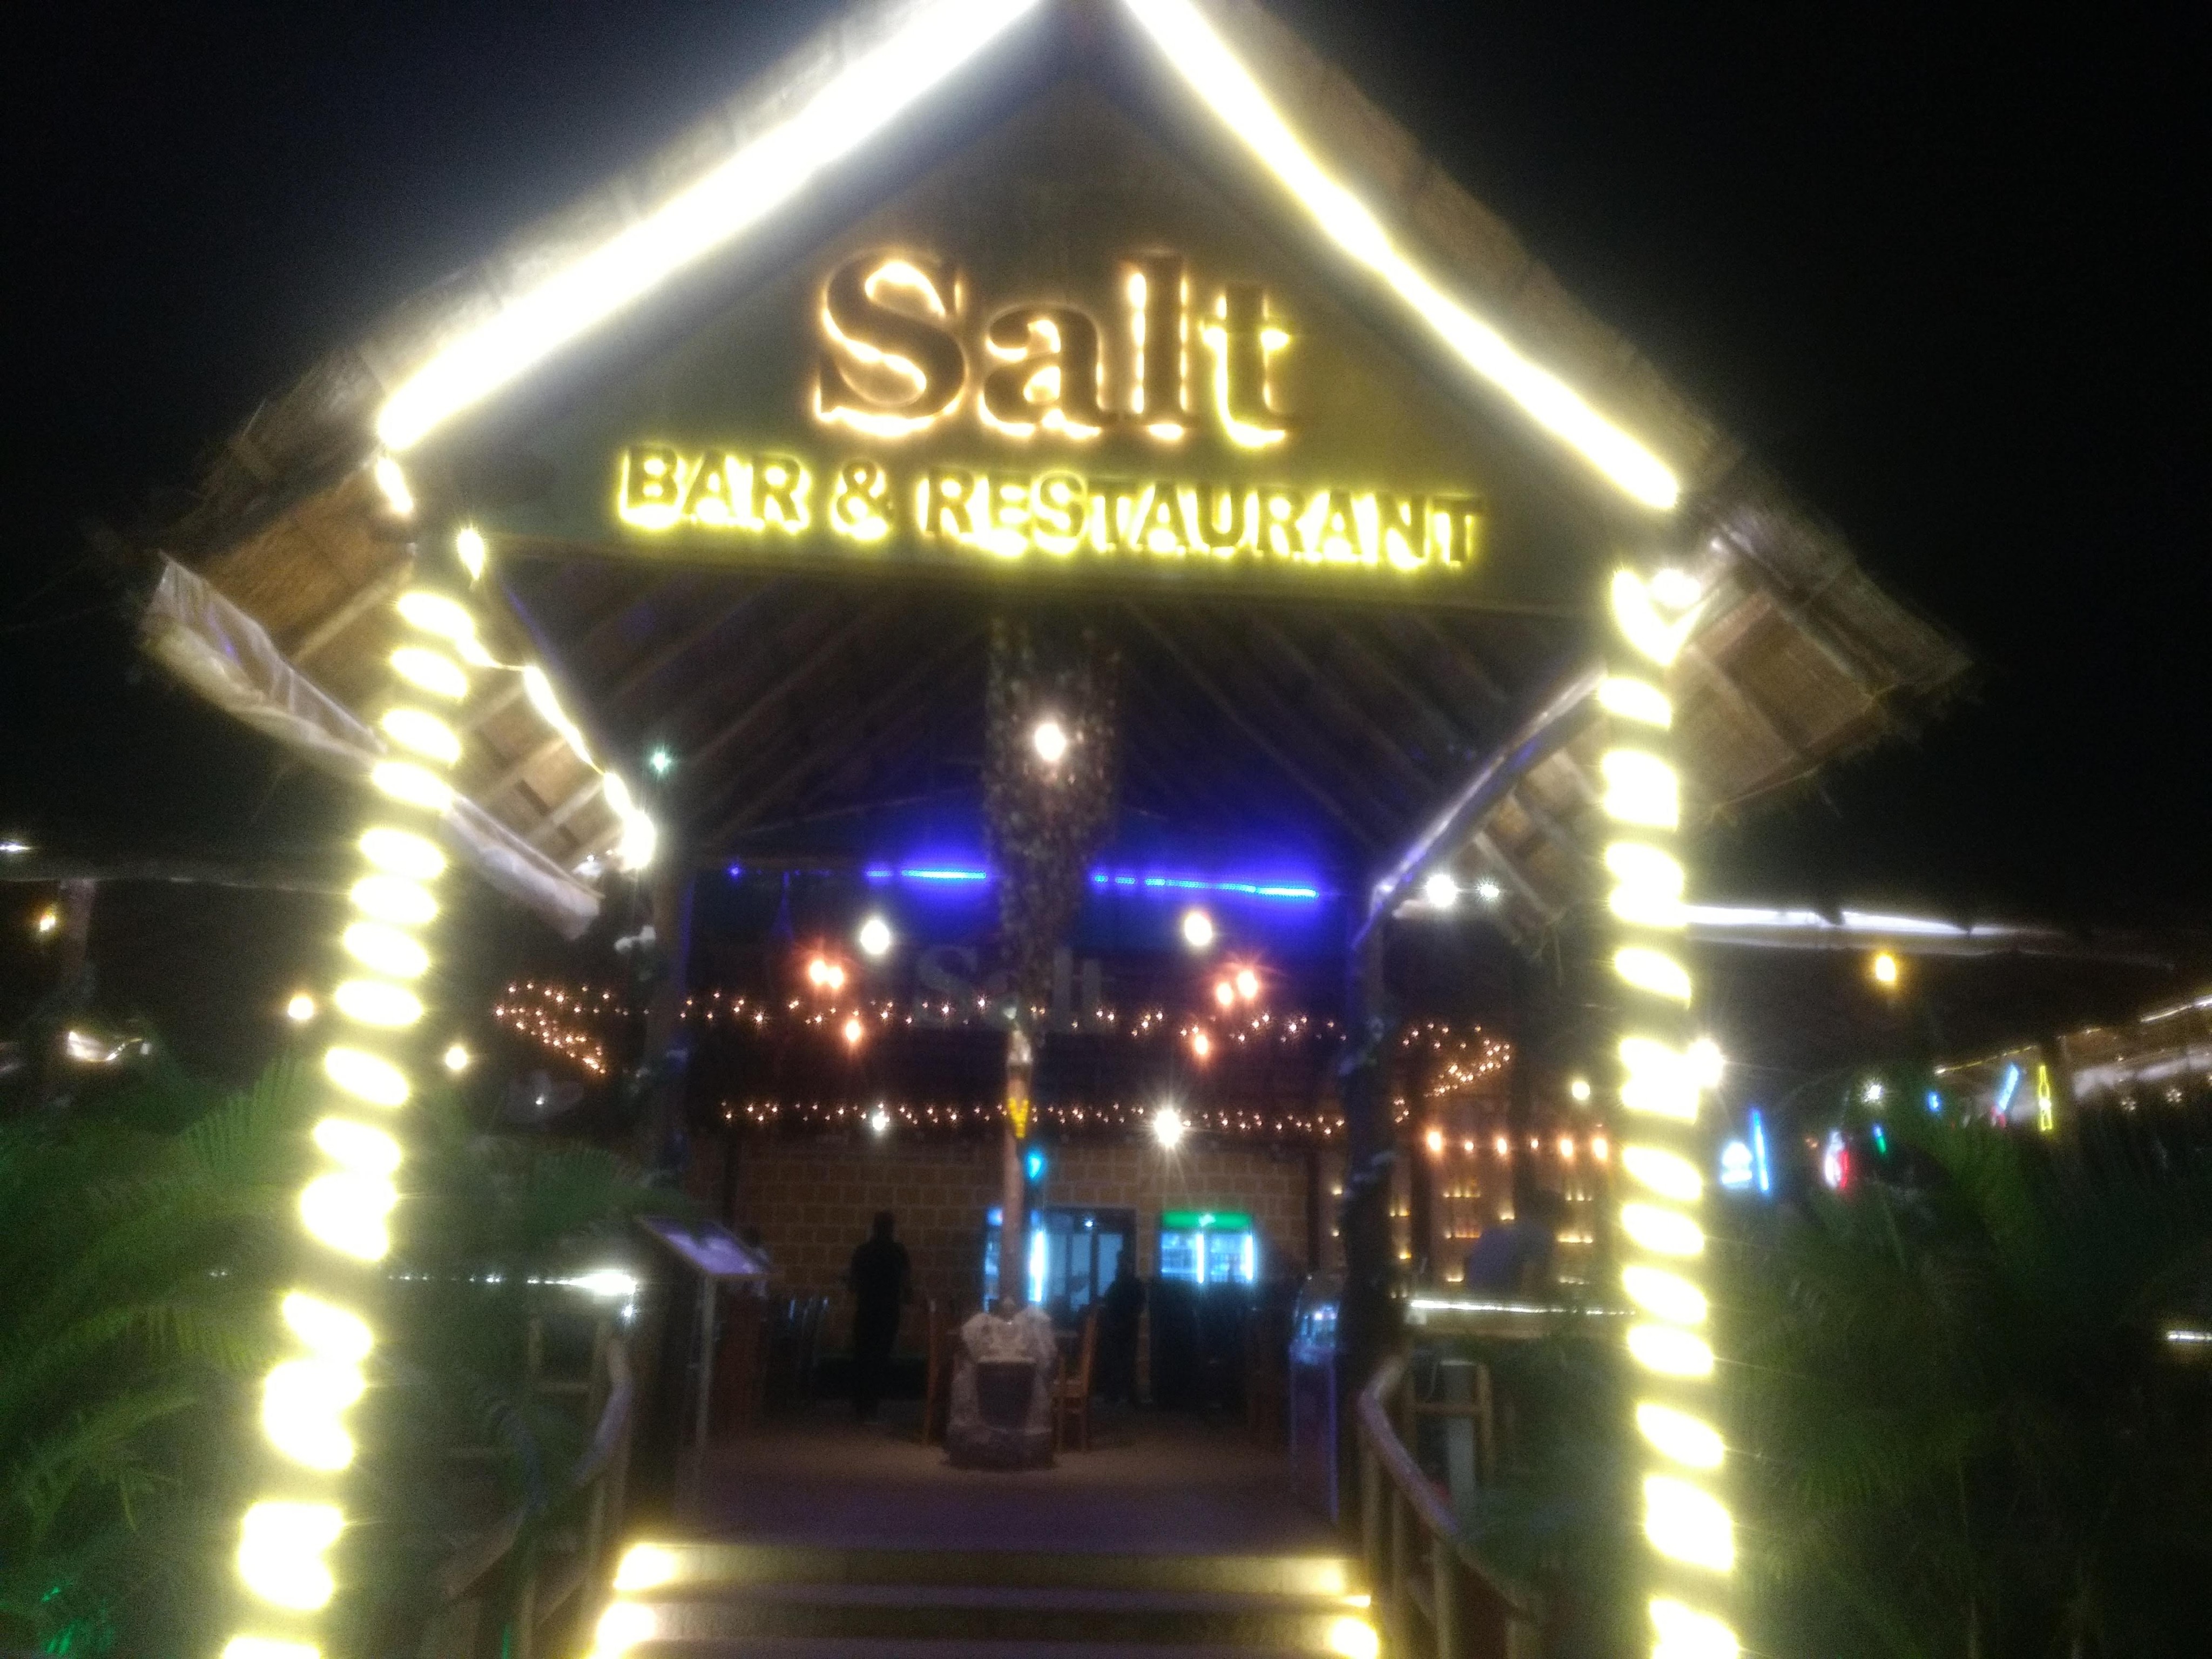 Salt Bar & Restaurant, Arpora, Goa, India